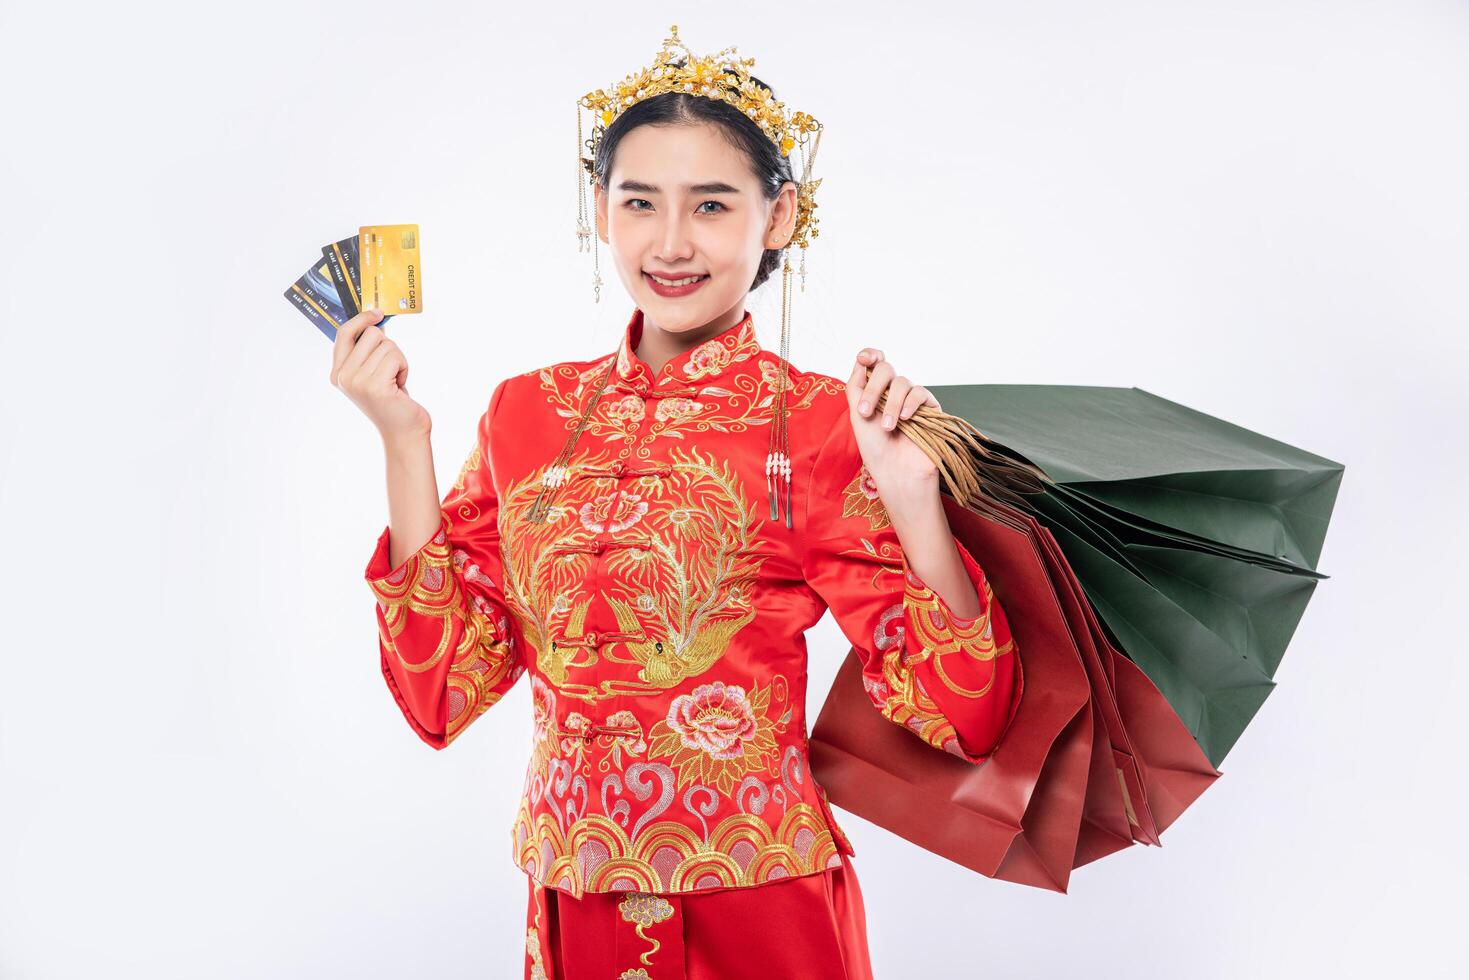 mujer usa traje cheongsam obtener muchas cosas al usar tarjeta de crédito en el año nuevo chino foto